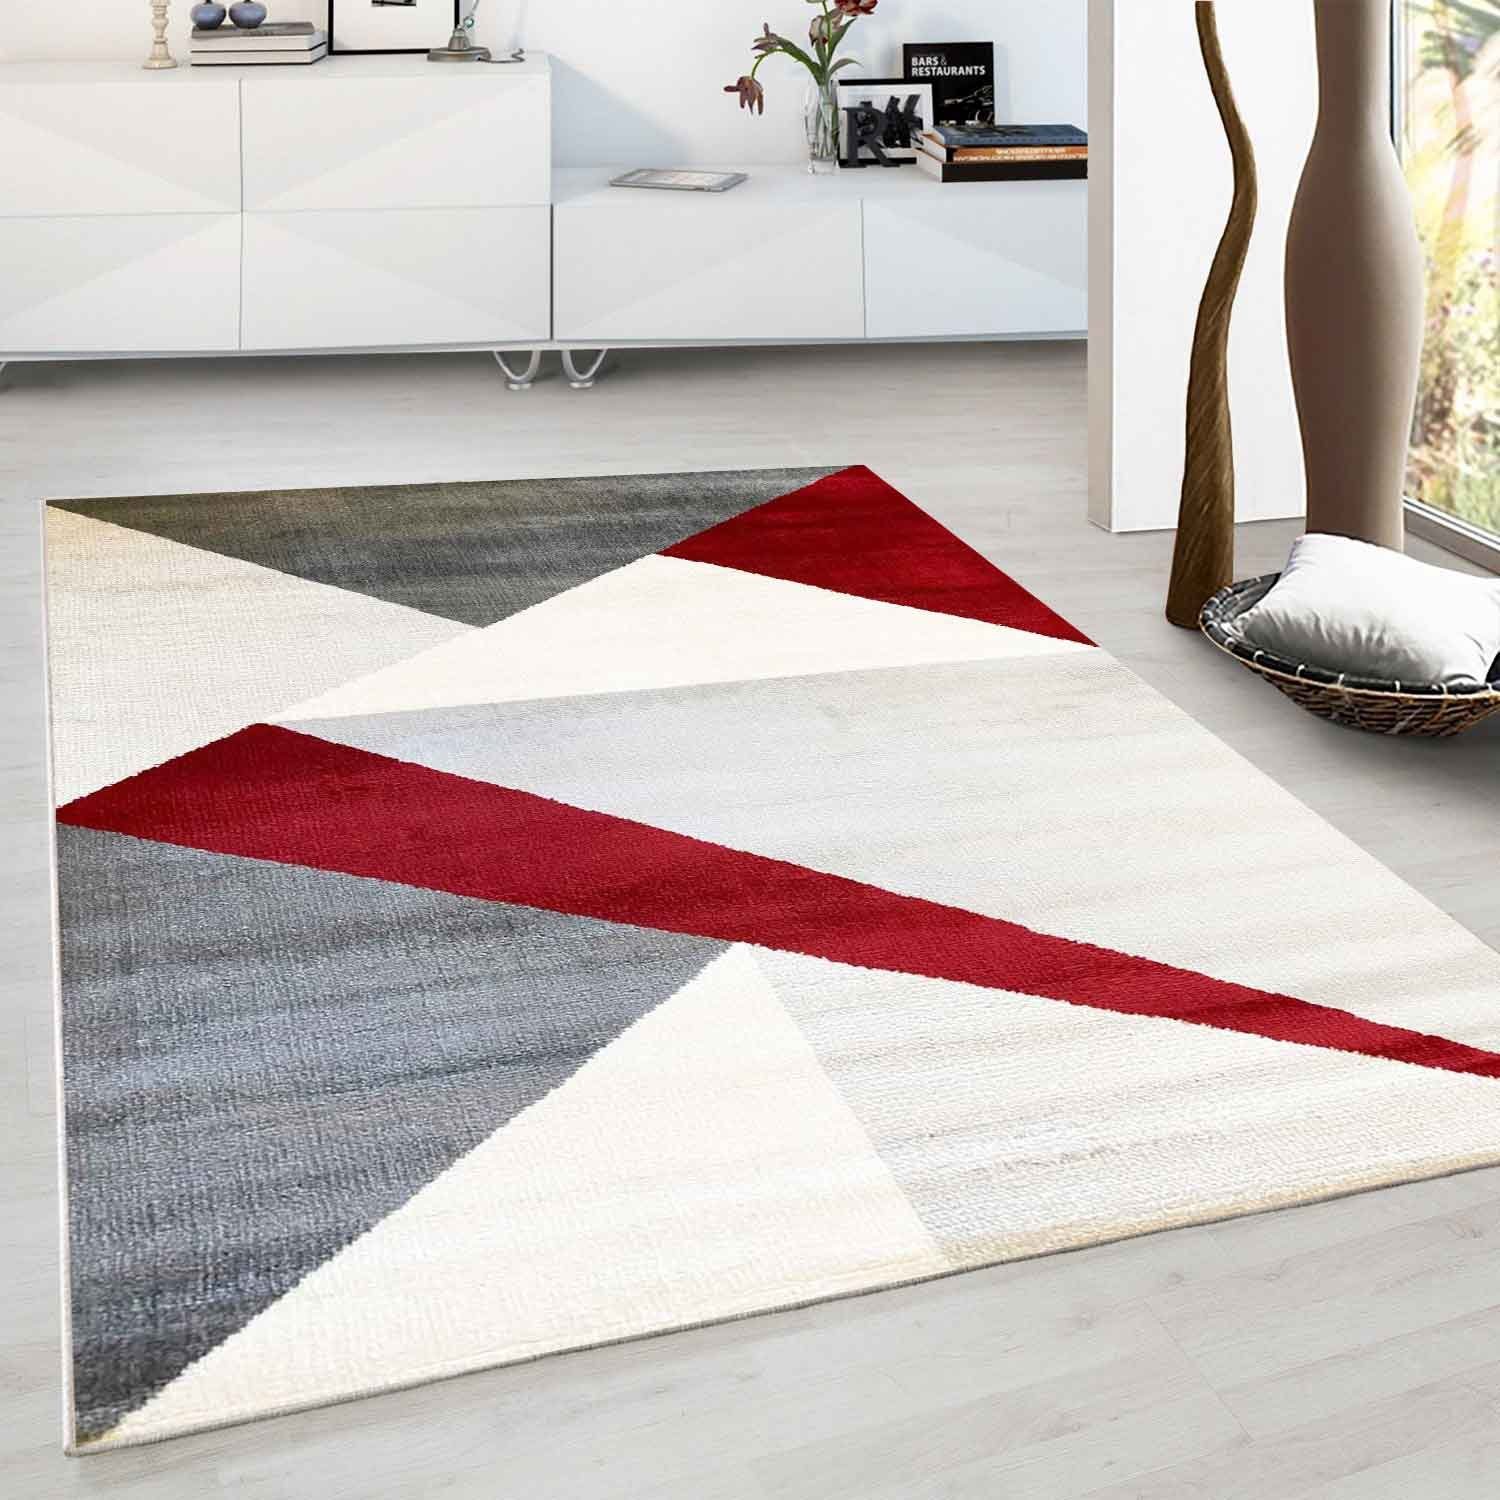 Vimoda, Geometrisches Rechteckig Muster Rot, Schlafzimmer Wohnzimmer Teppich Flur Teppich Teppich